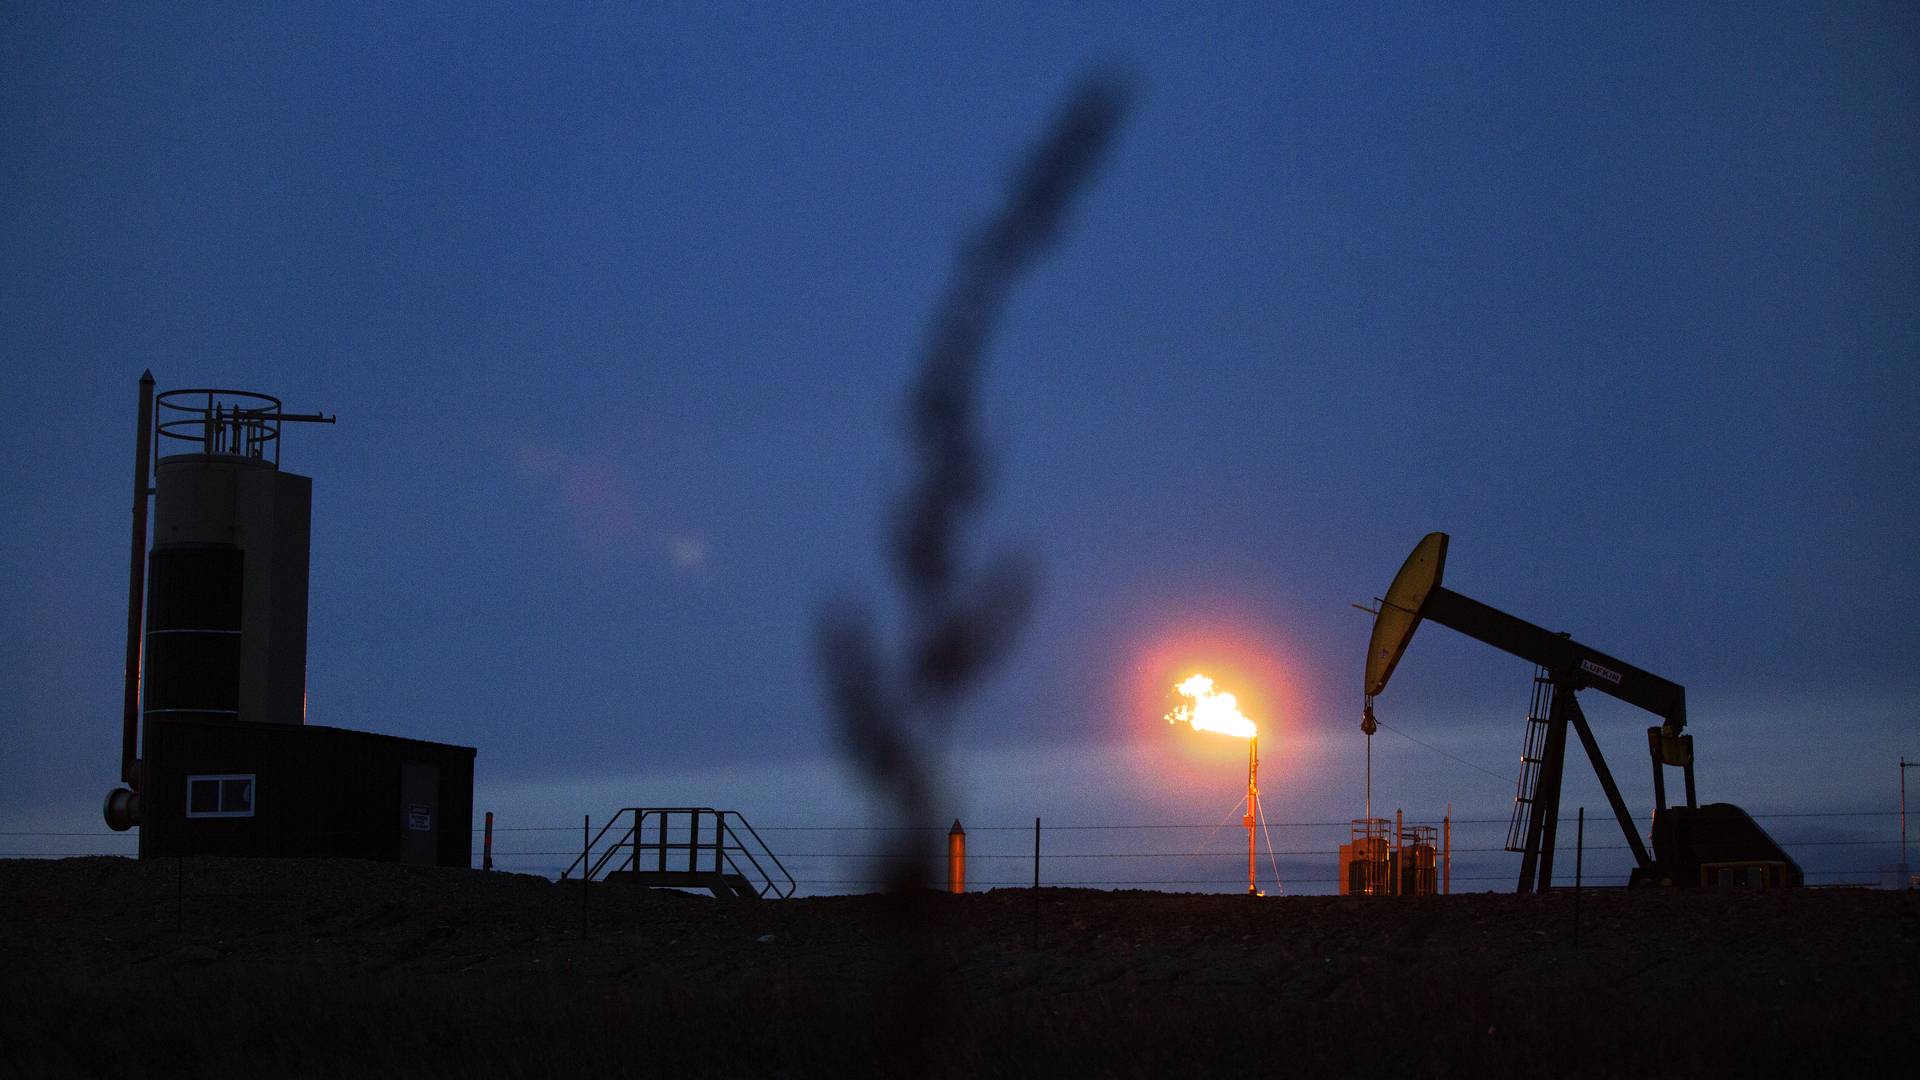 Oliepriser med udsigt til tiltag hos — EnergiWatch